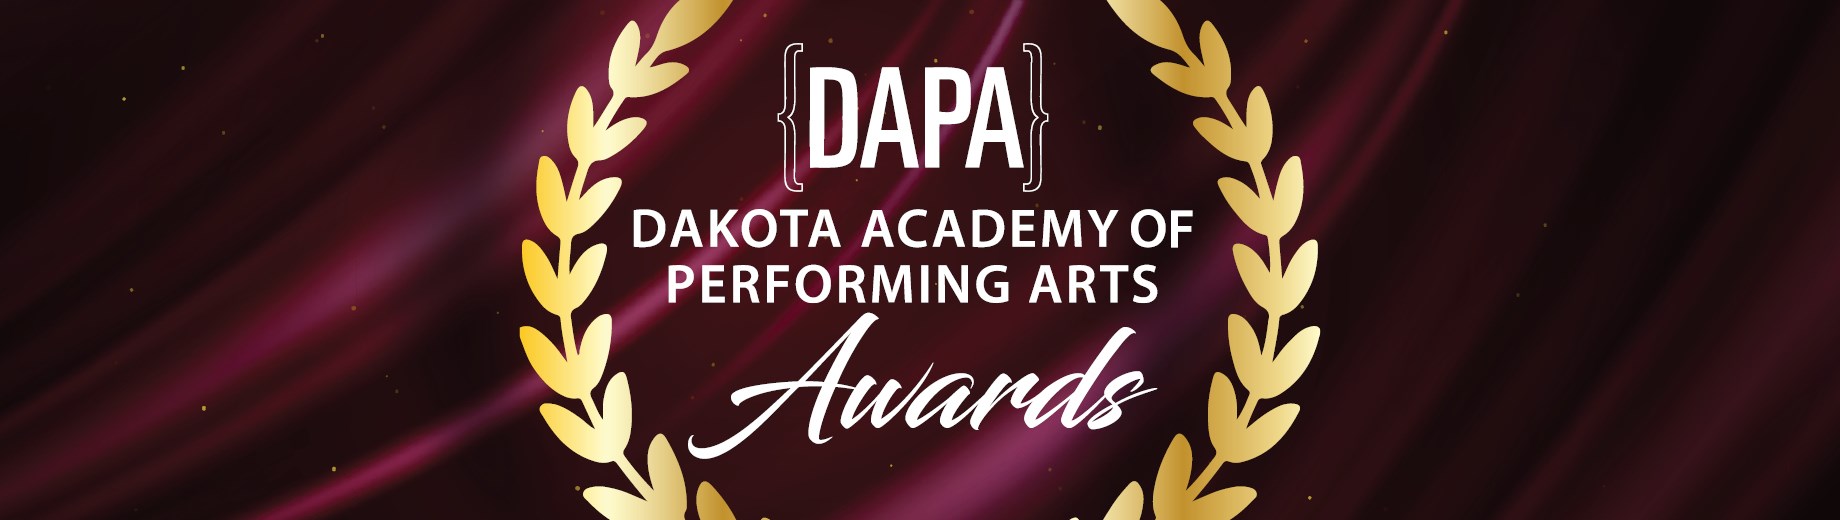 DAPA Awards